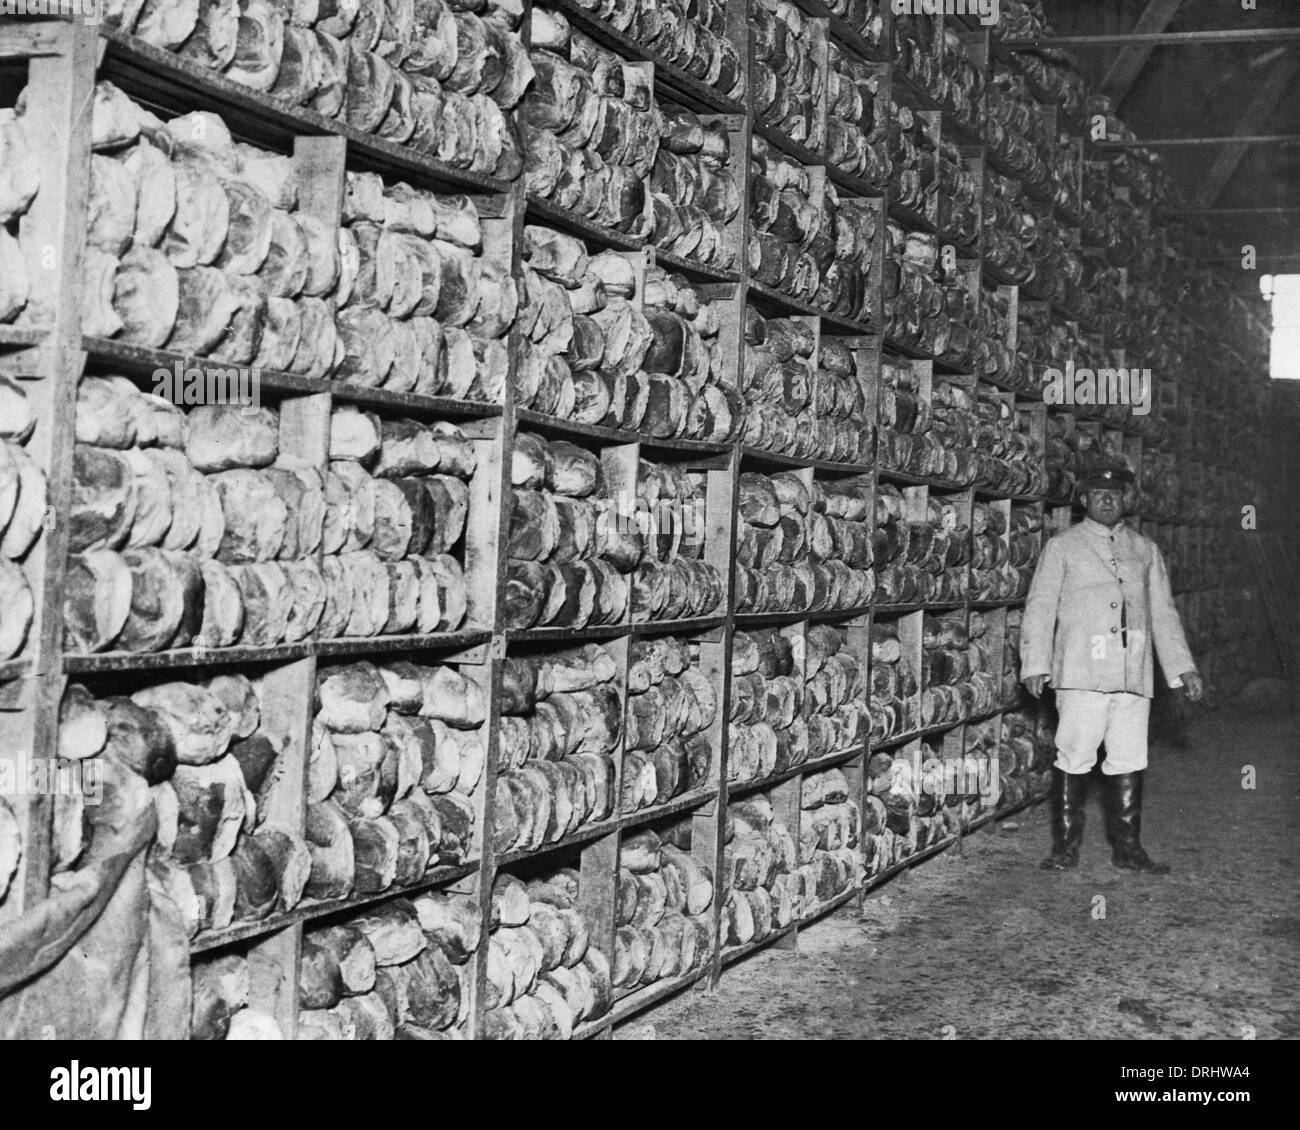 Scene inside a bread store, Western Front, WW1 Stock Photo